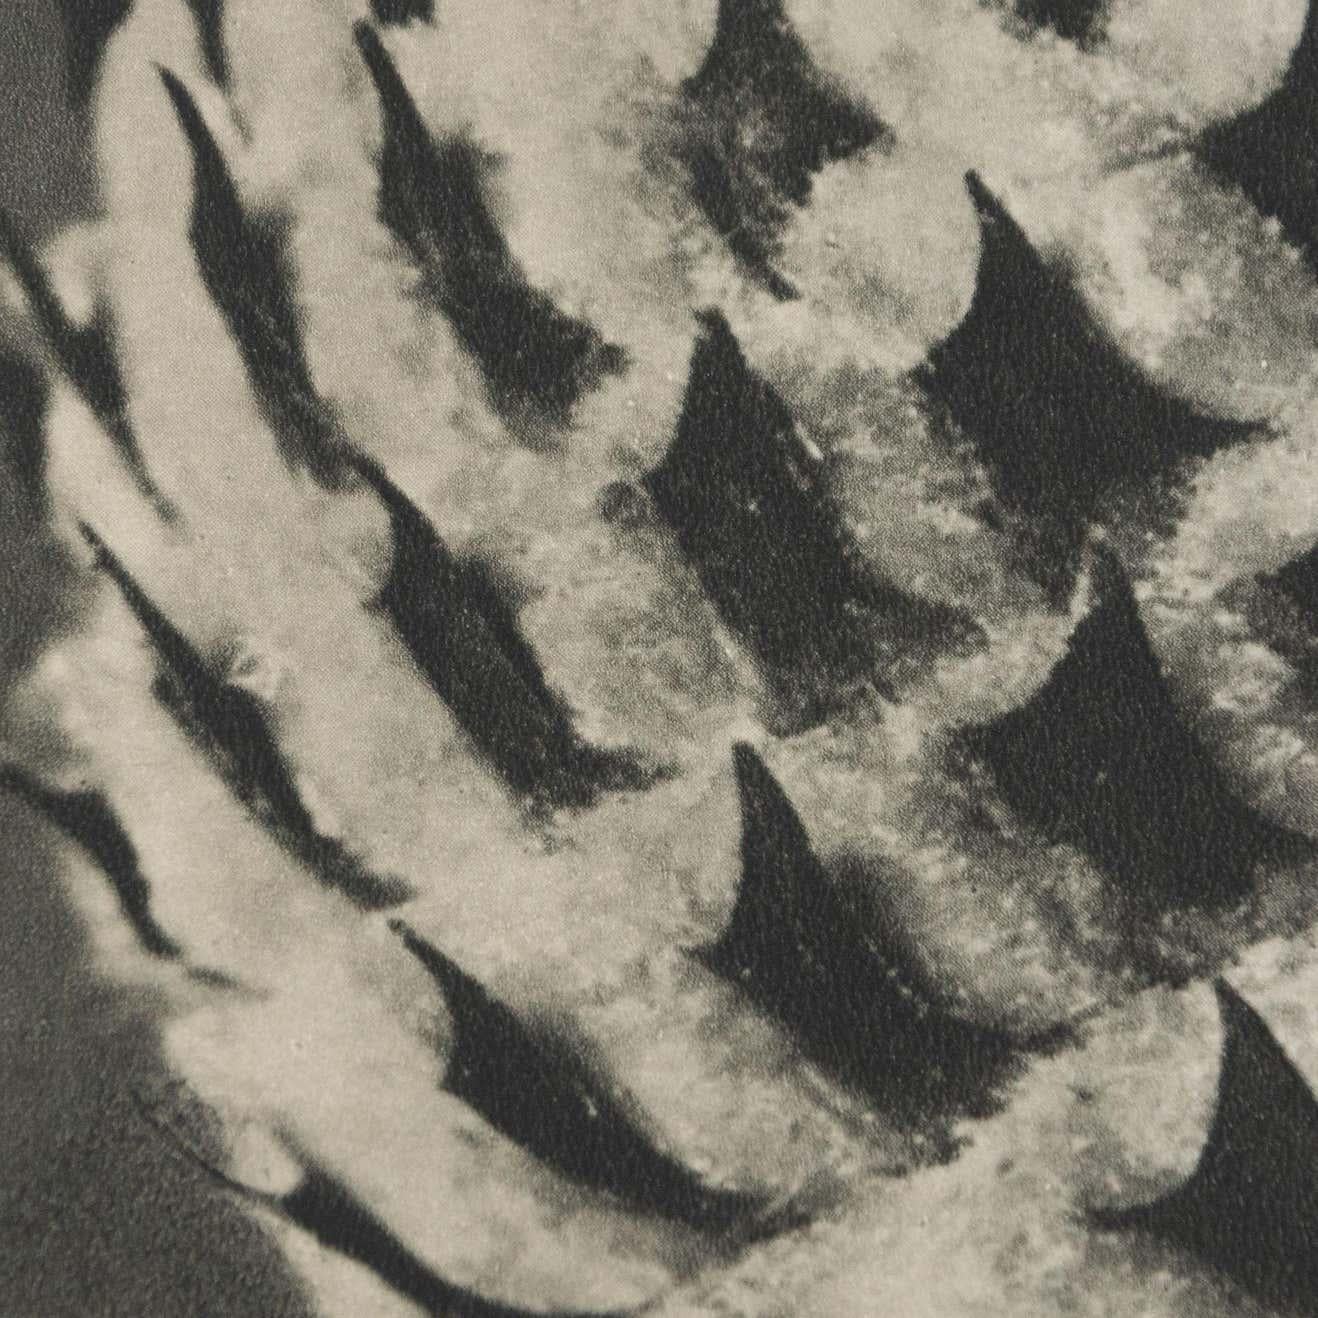 Karl Blossfeldt Black White Flower Photogravure Botanic Photography, 1942 For Sale 6